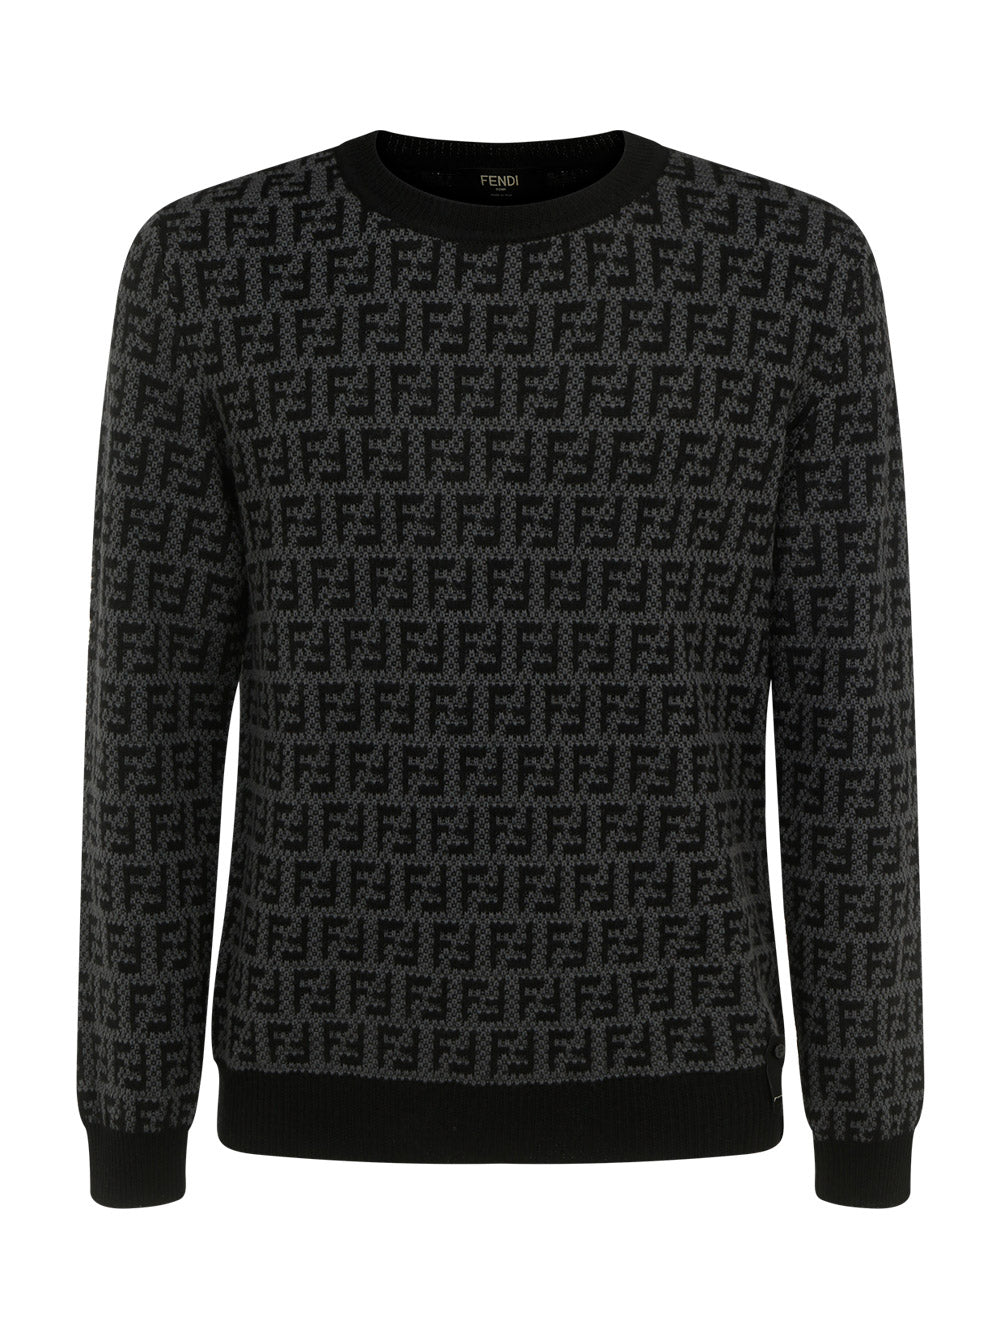 Monogram Wool Pullover - Black Grey